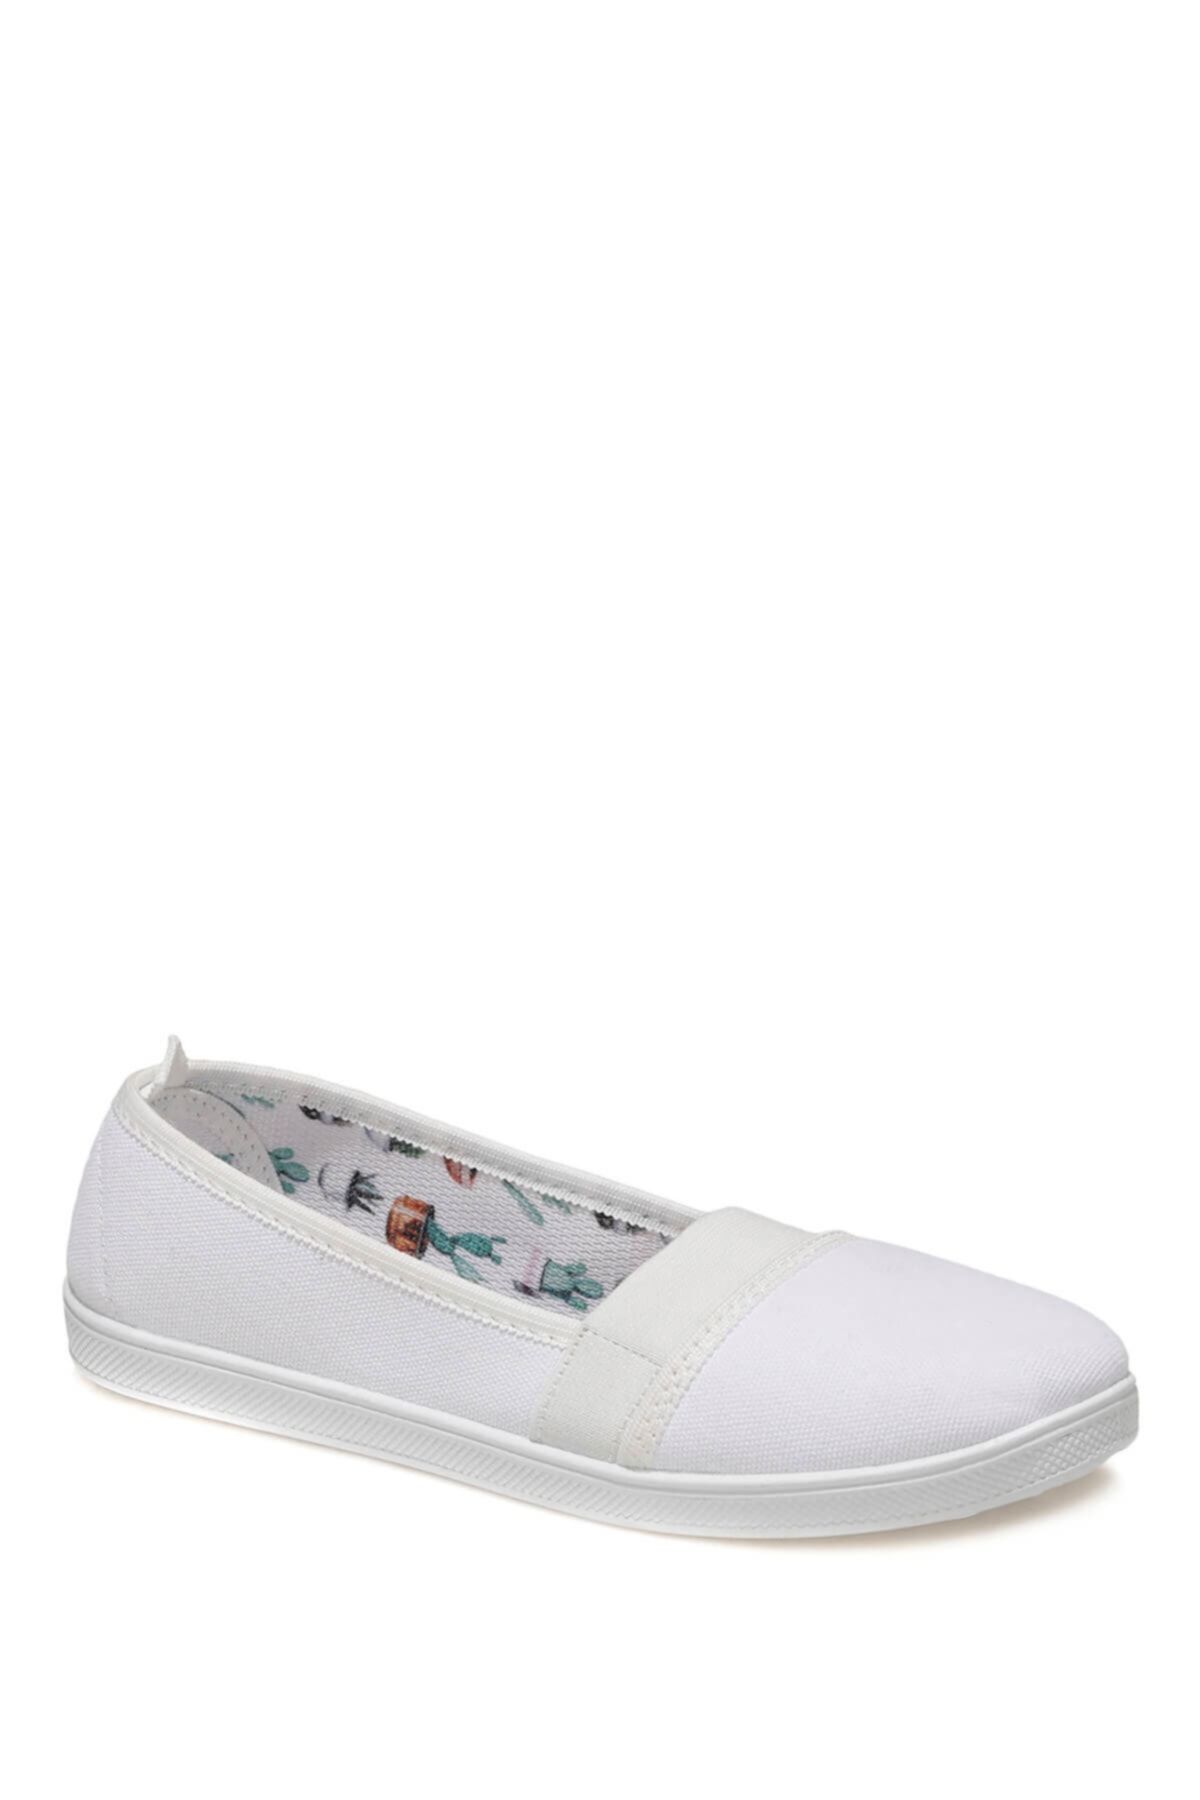 Torex Kadın Beyaz Sneaker Ayakkabı 101021895